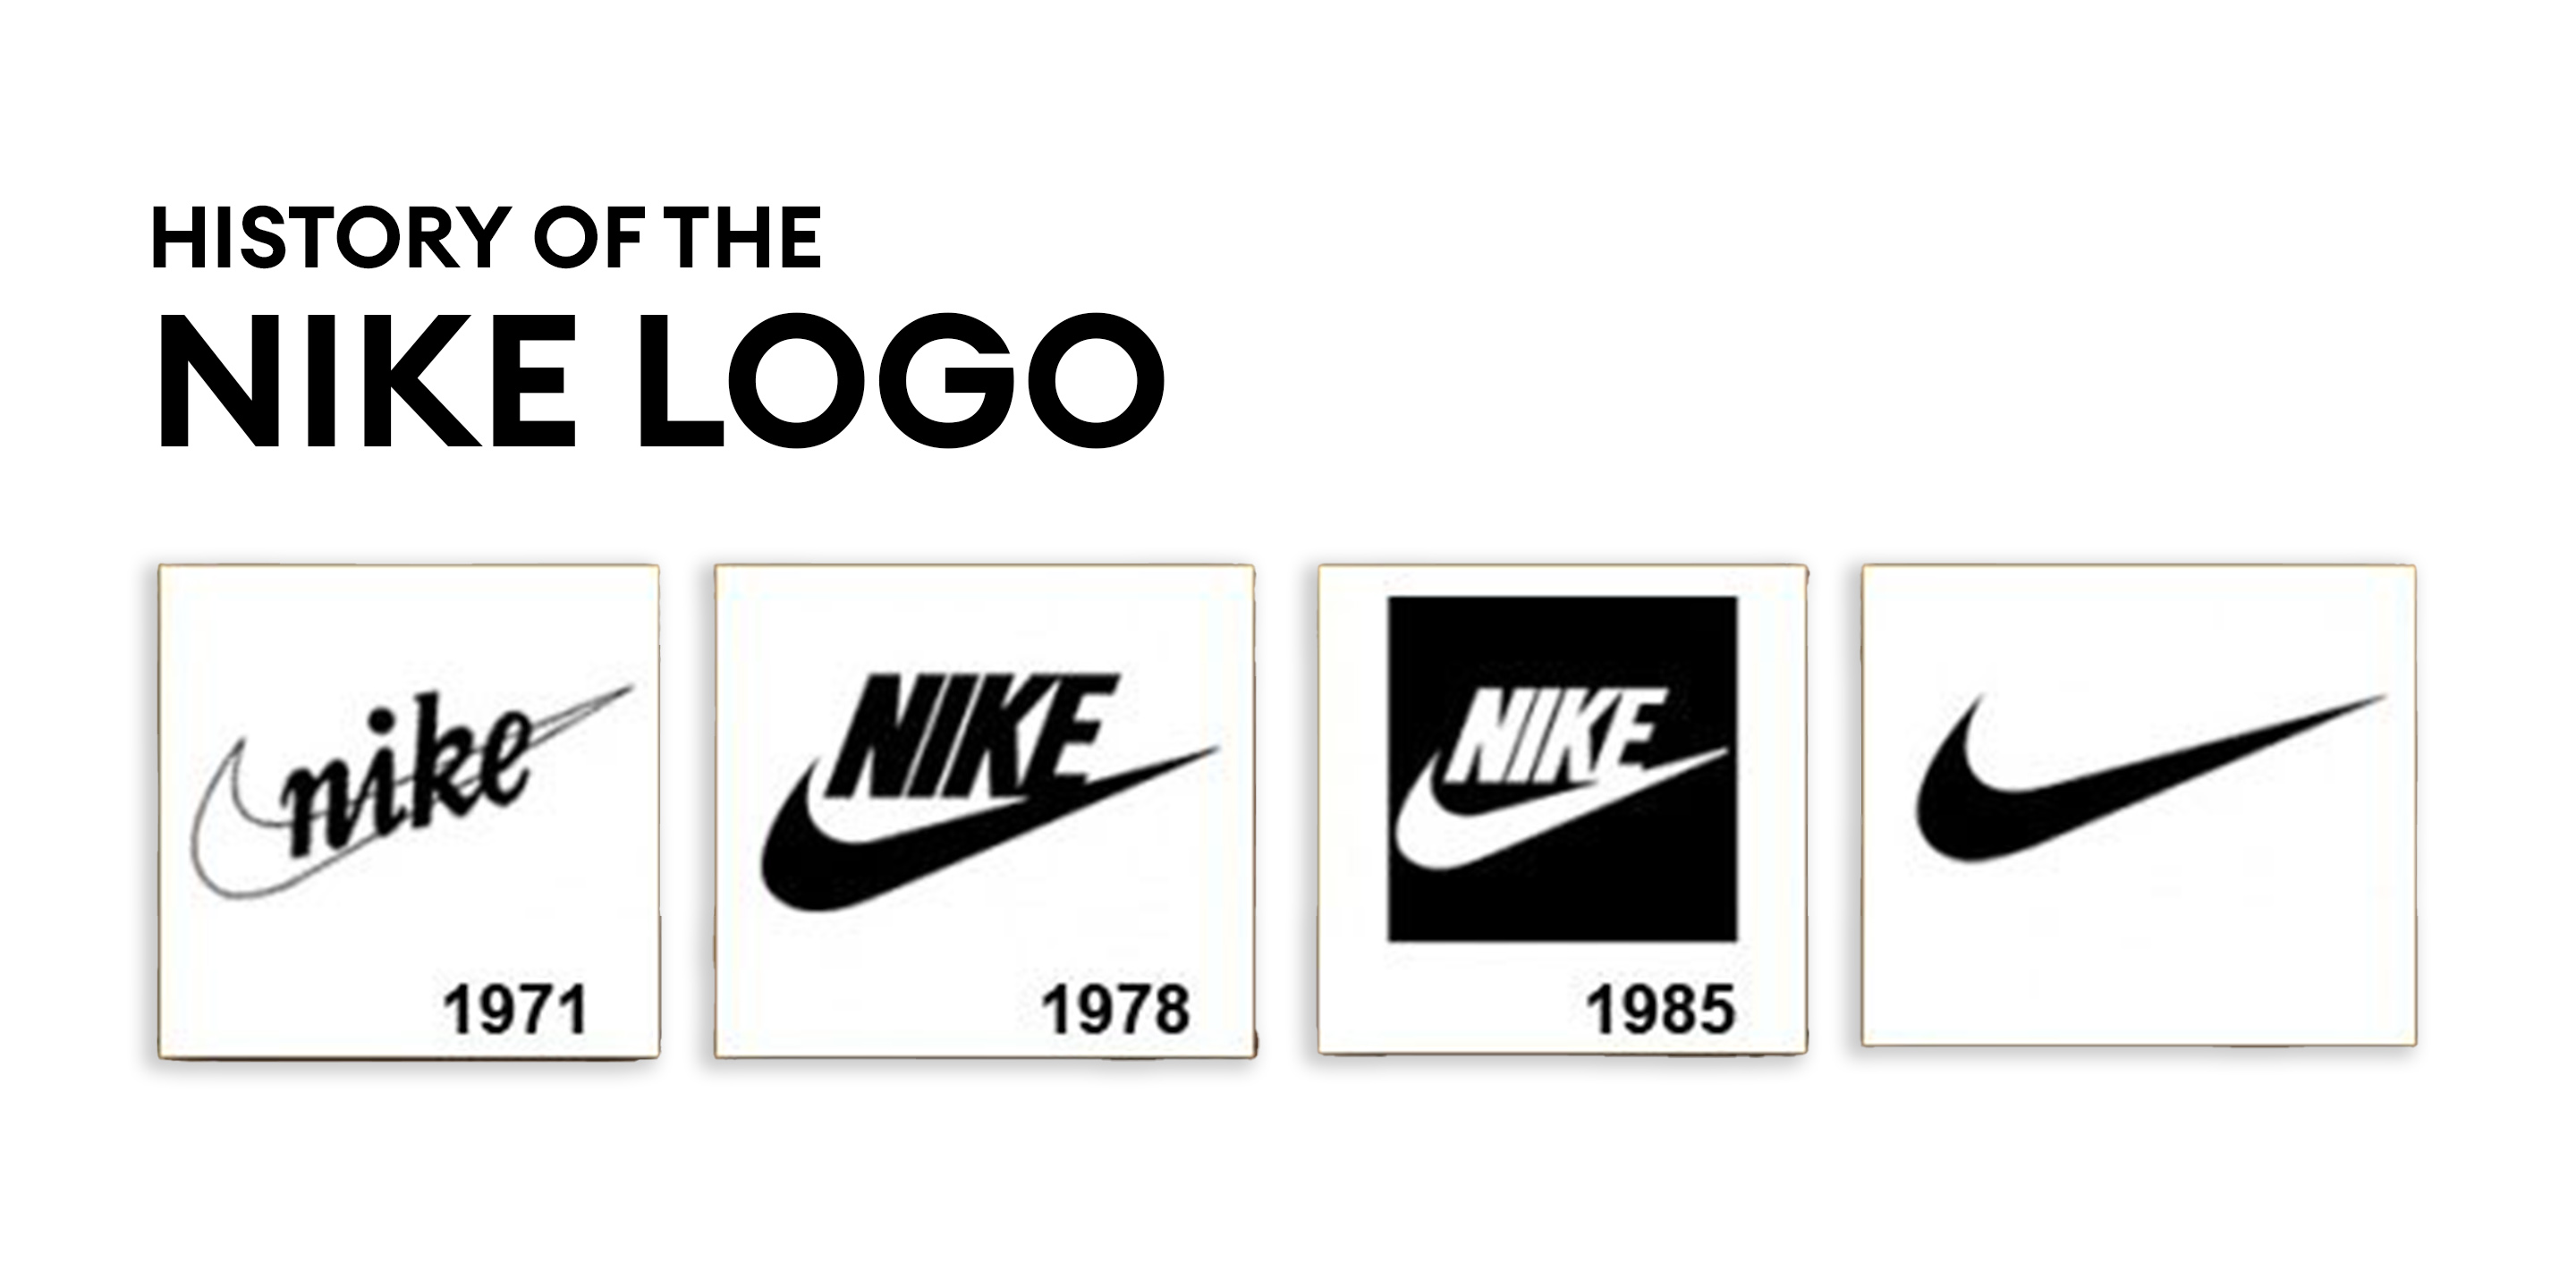 Nike's website logo